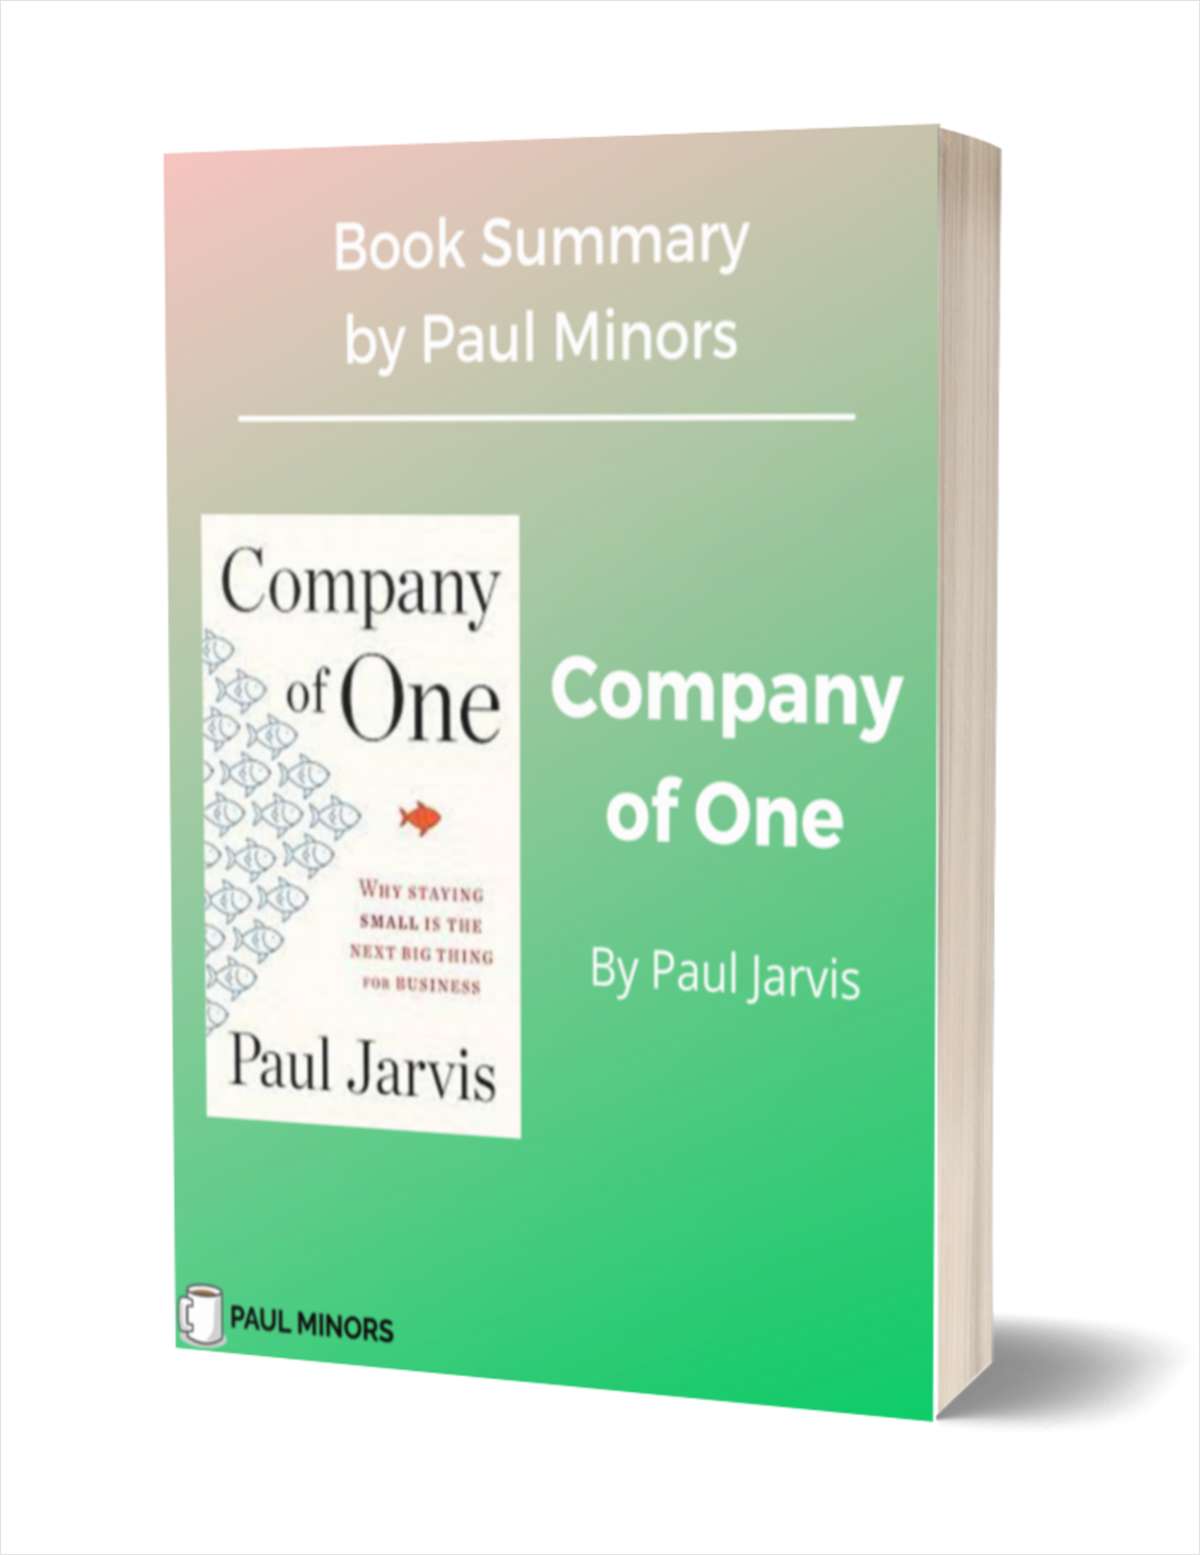 Company of One Book Summary